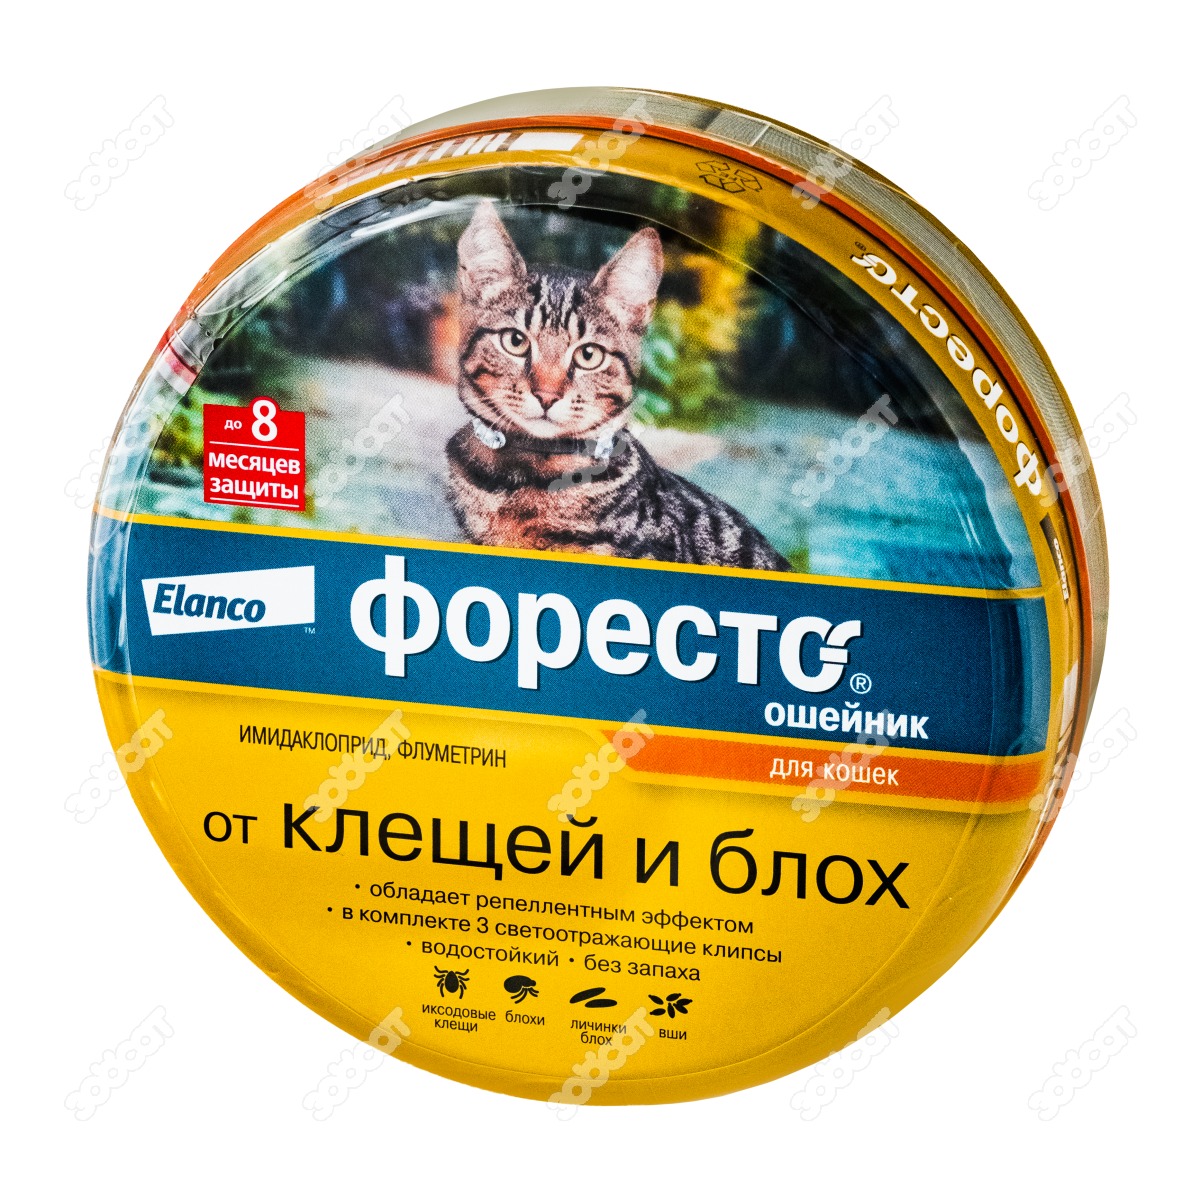 Форесто для кошек купить в москве. Эланко "Форесто" ошейник инсекцитидный для кошек 38см цвет.